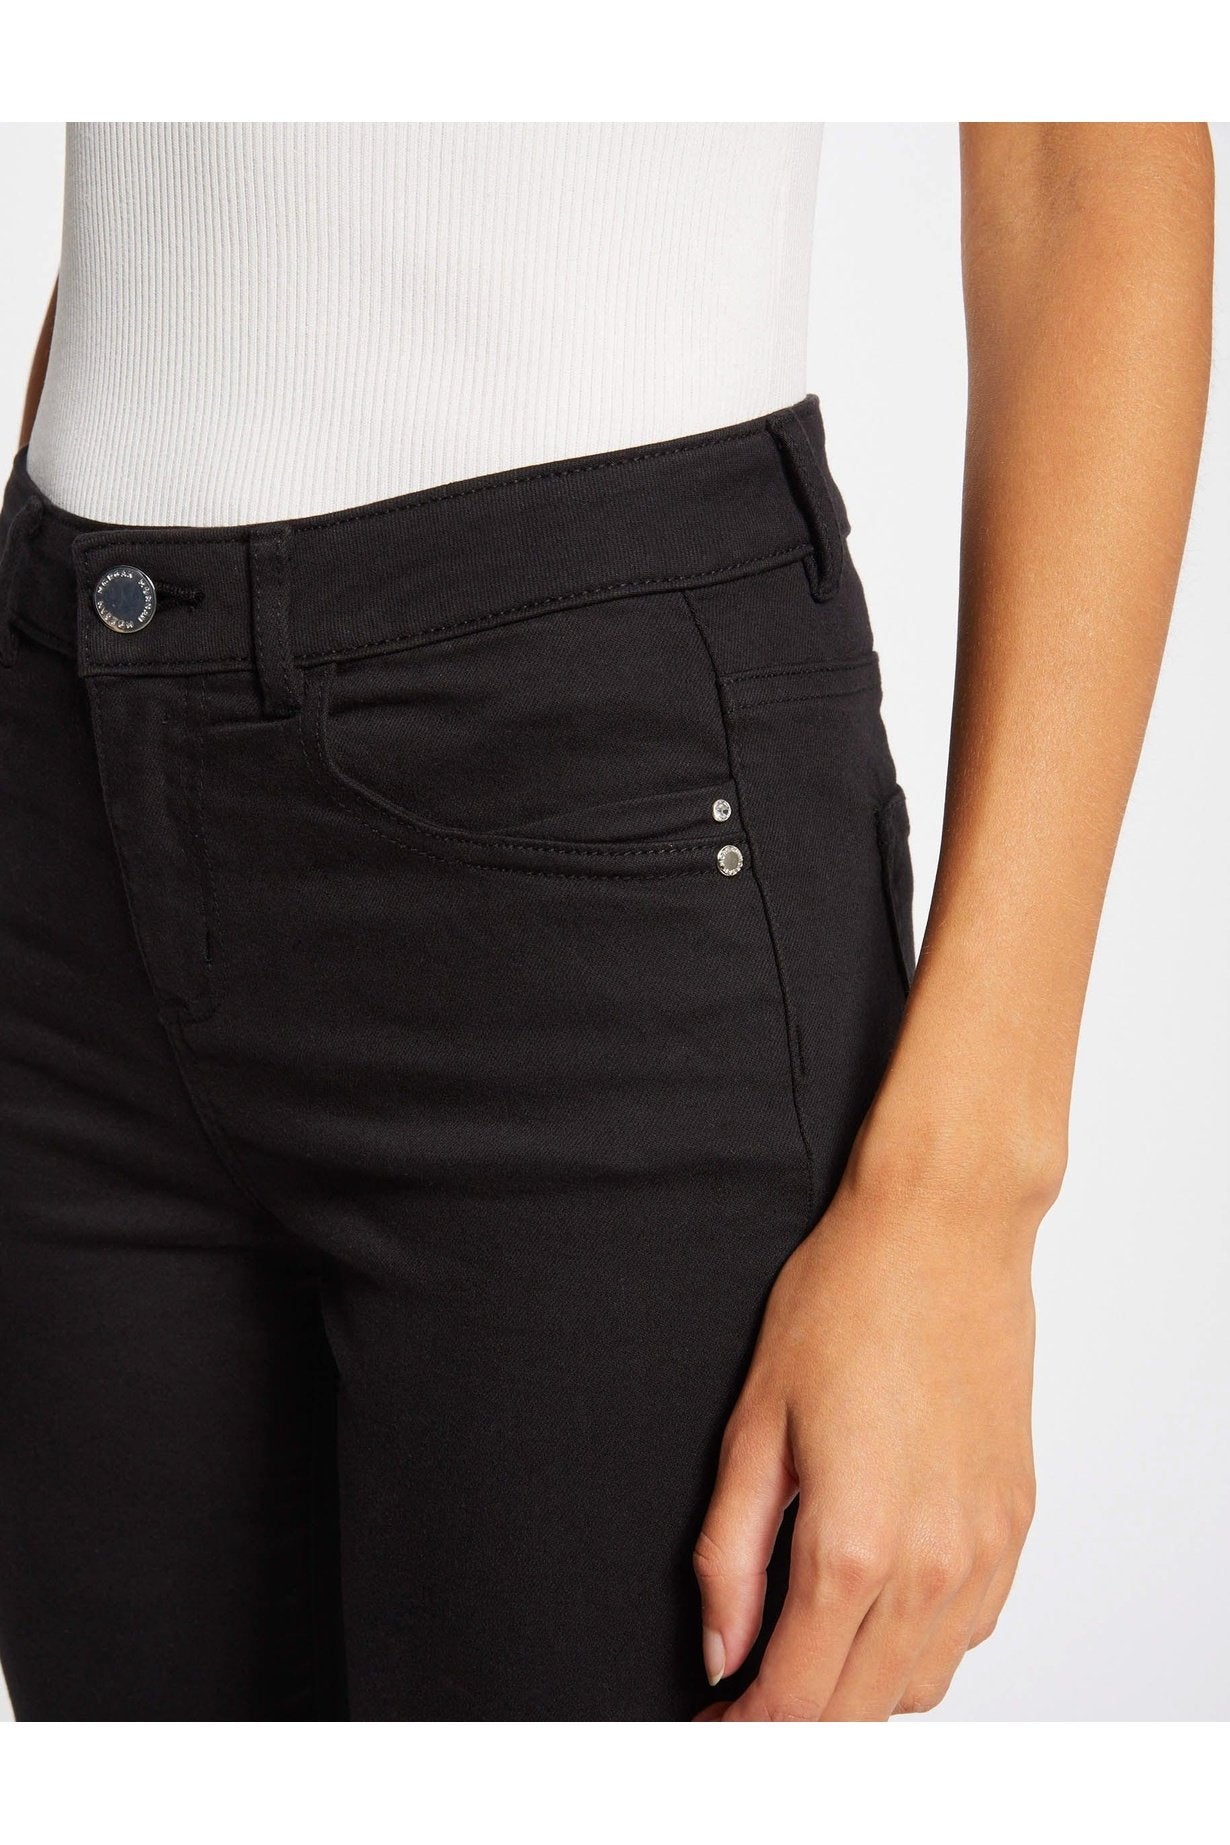 ג'ינס גזרה נמוכה בצבע שחור - MASHBIR//365